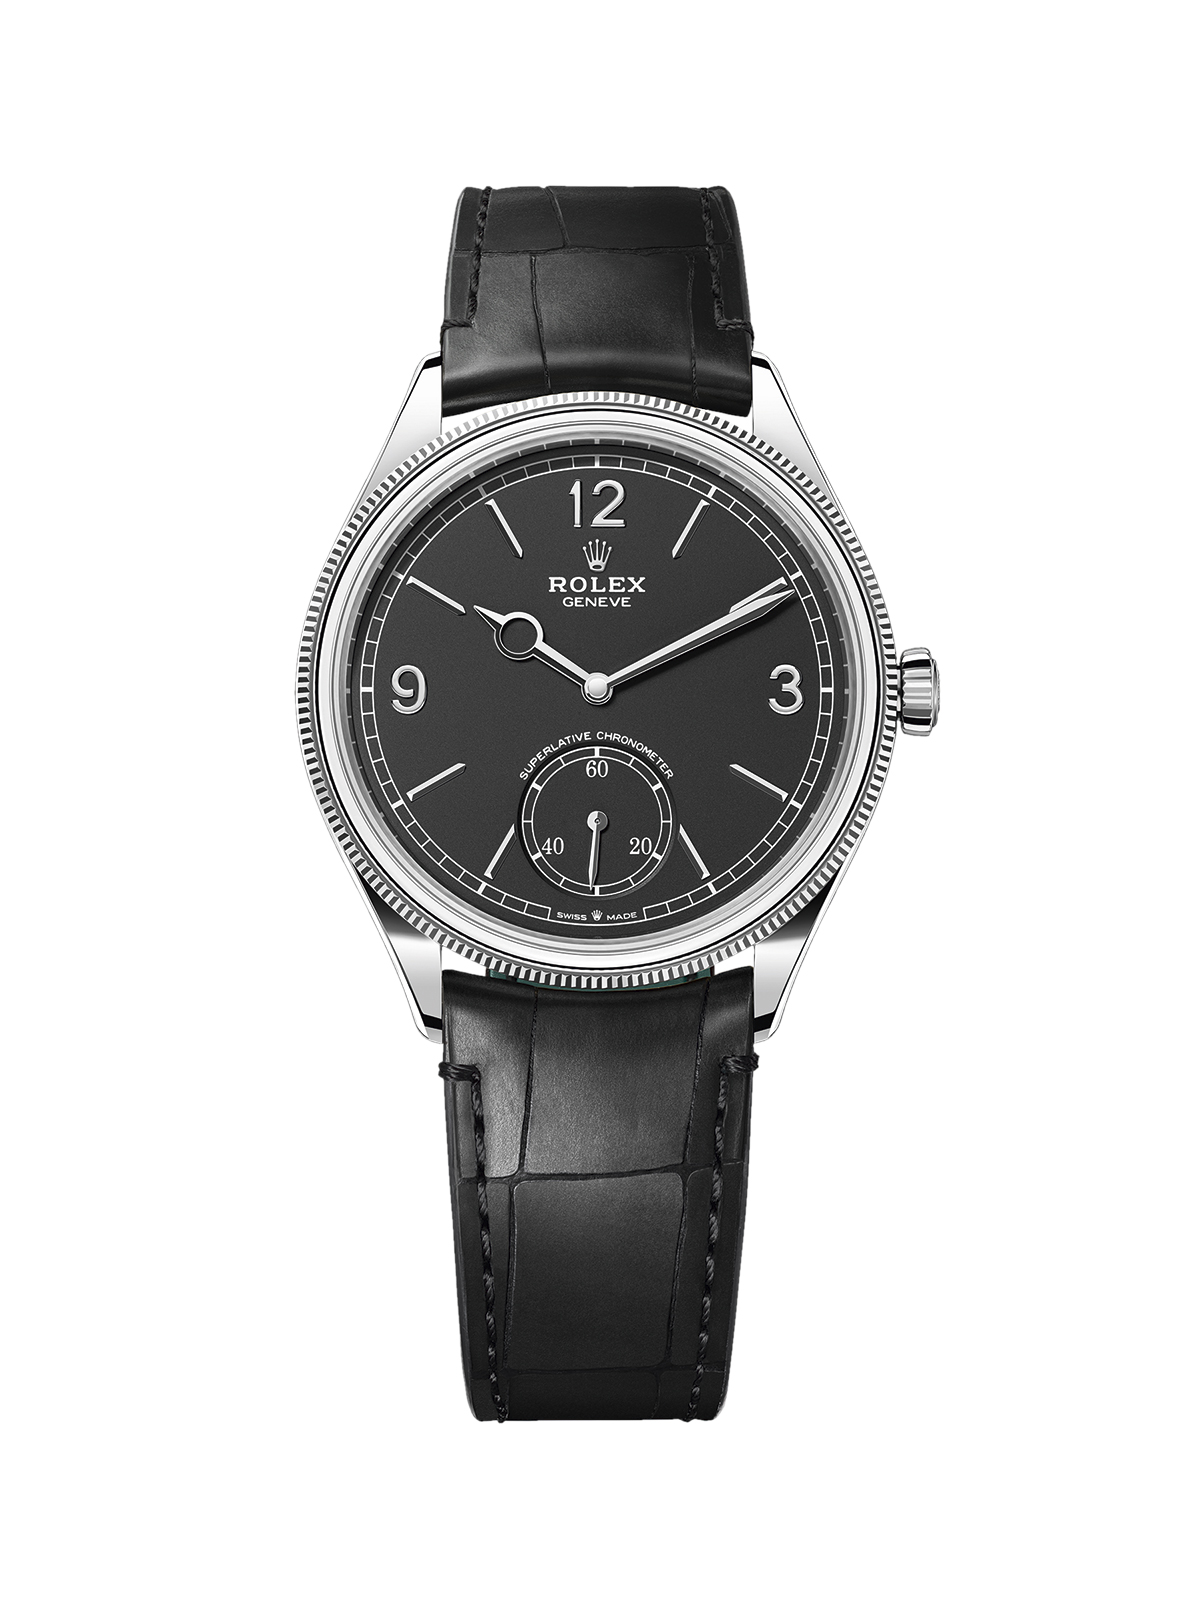 Vintage Watch Models - Rolex Perpetual